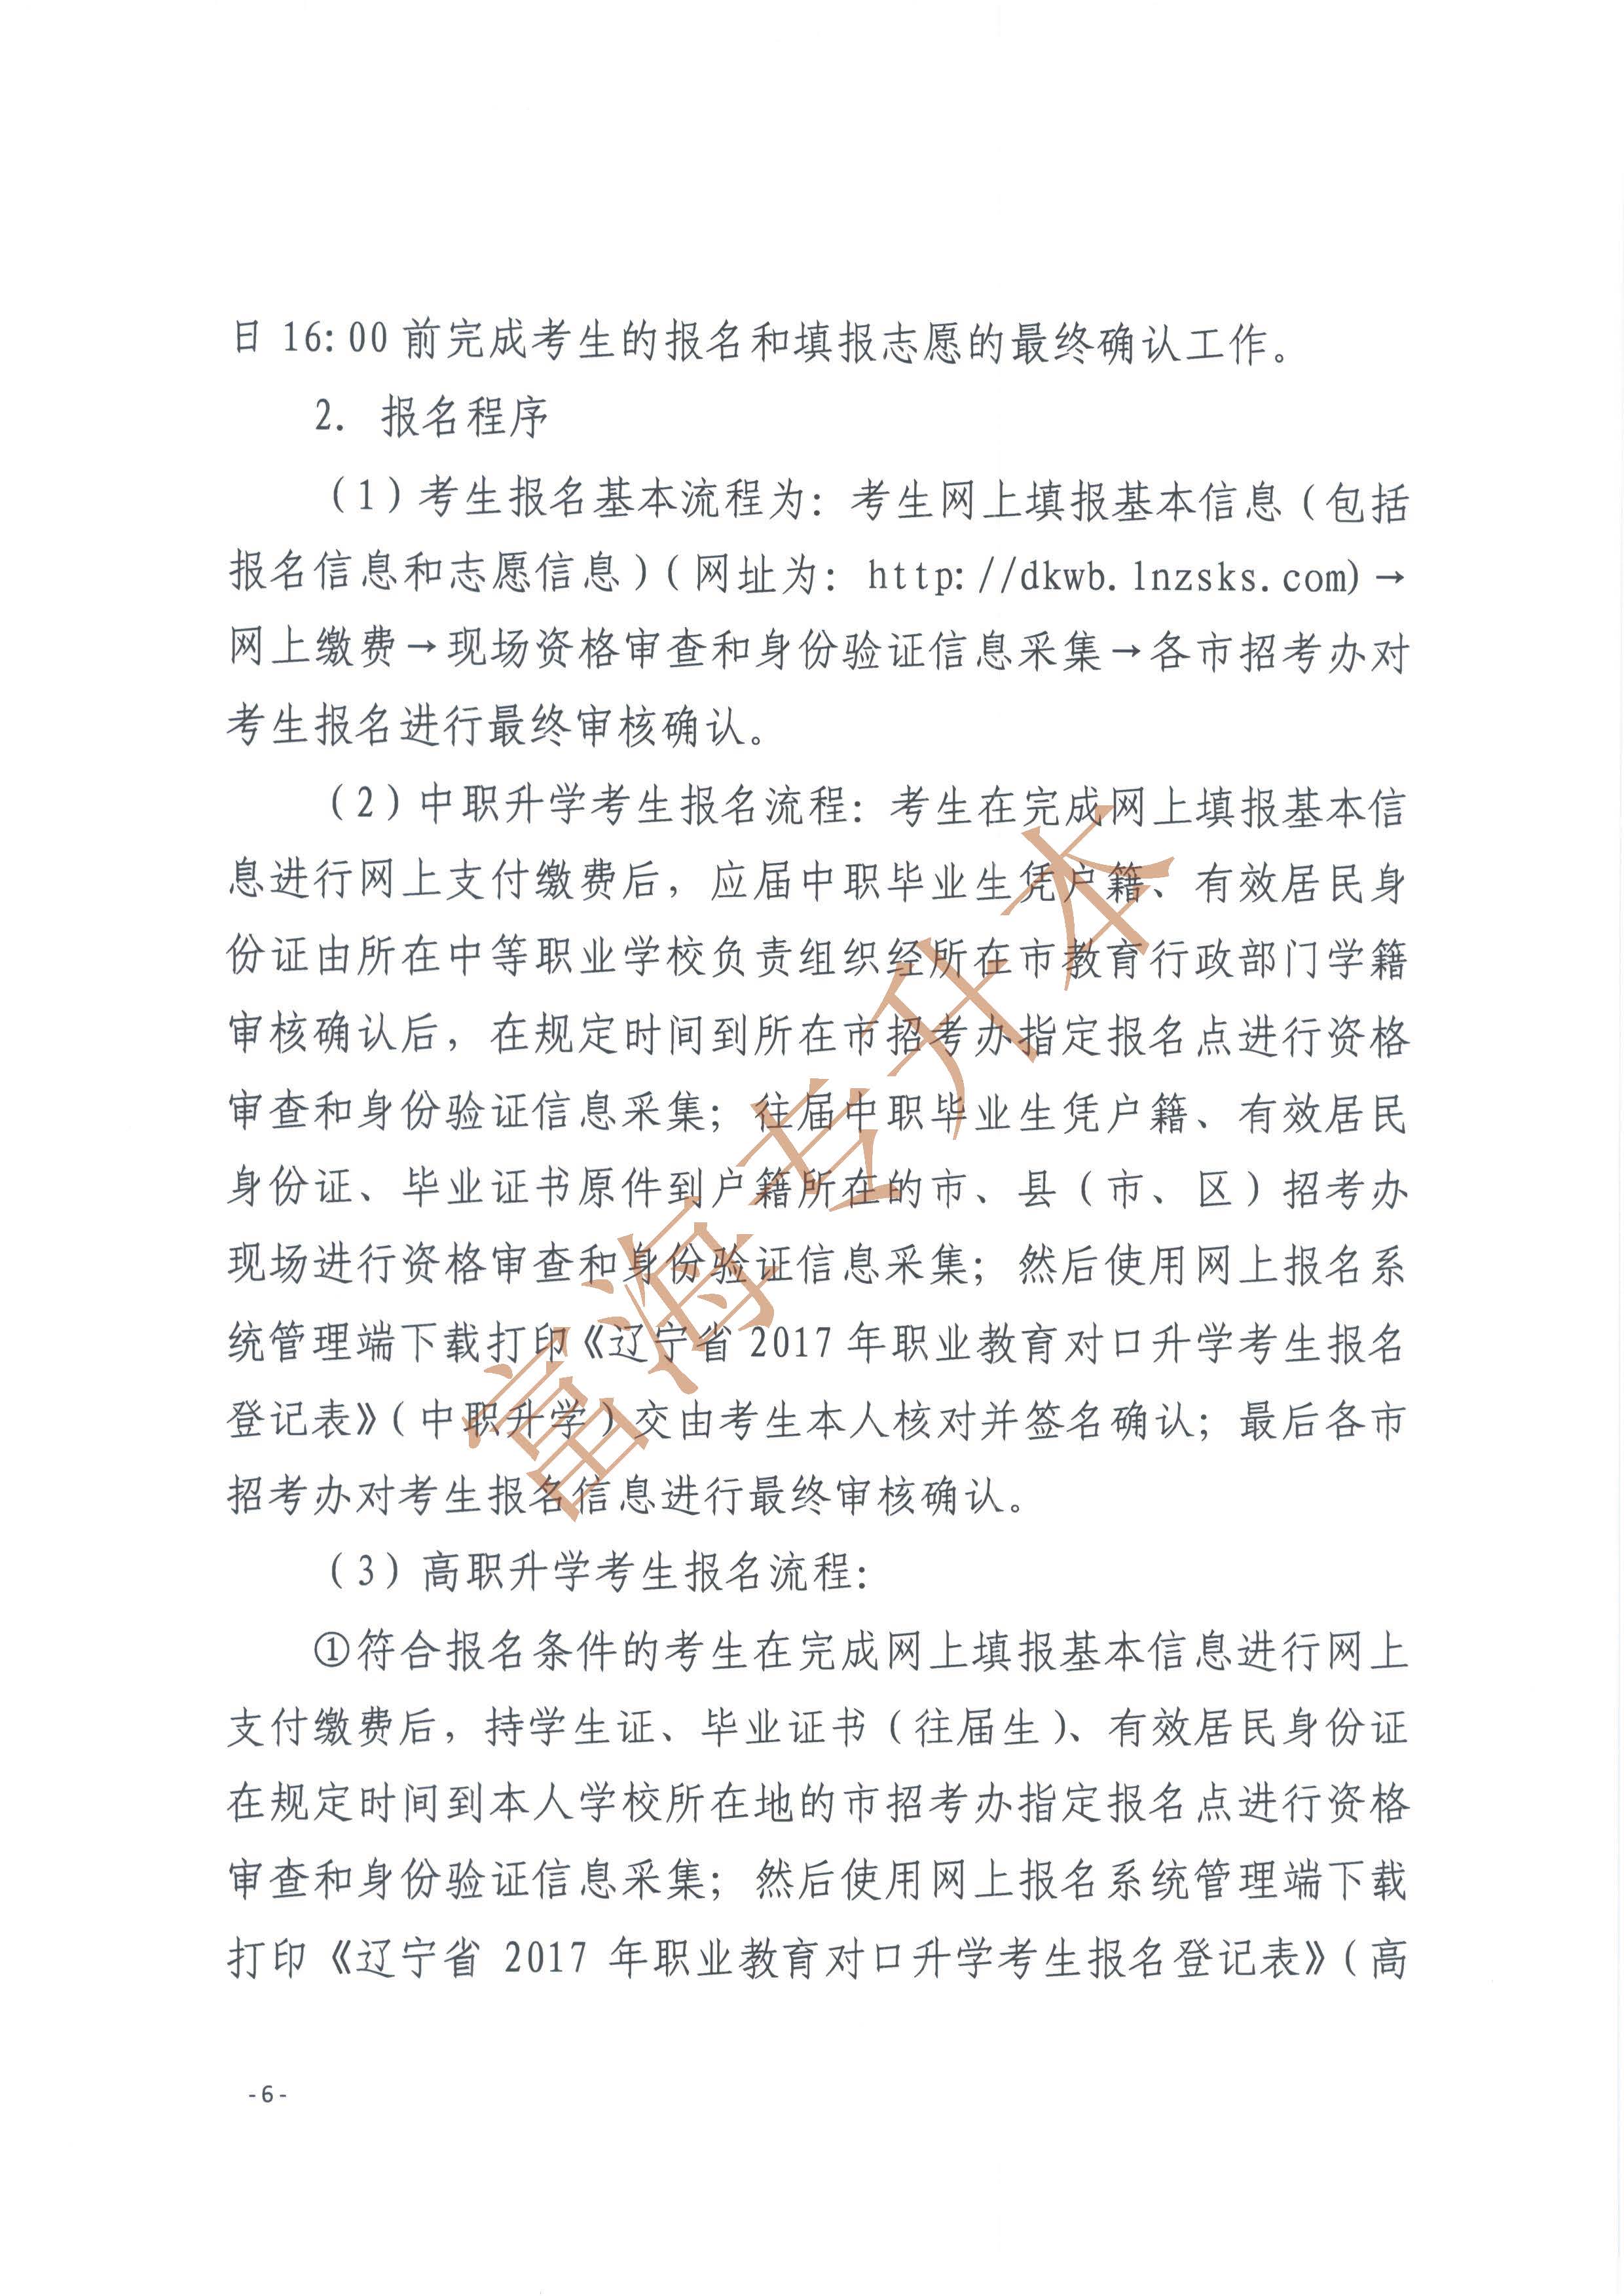 辽宁省2017年职业教育对口升学考试招生工作实施办法的通知6